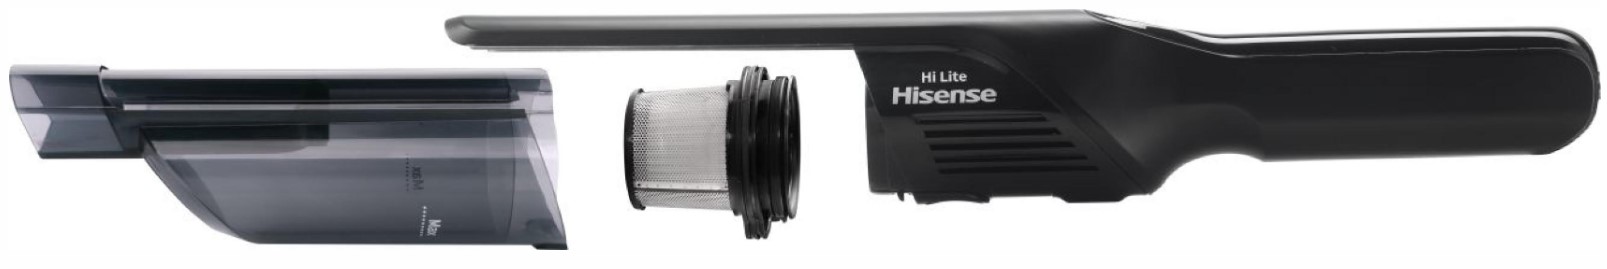 Аккумуляторный пылесос Hisense HVC9401BK (VC3955-GS)  отзывы - изображения 5